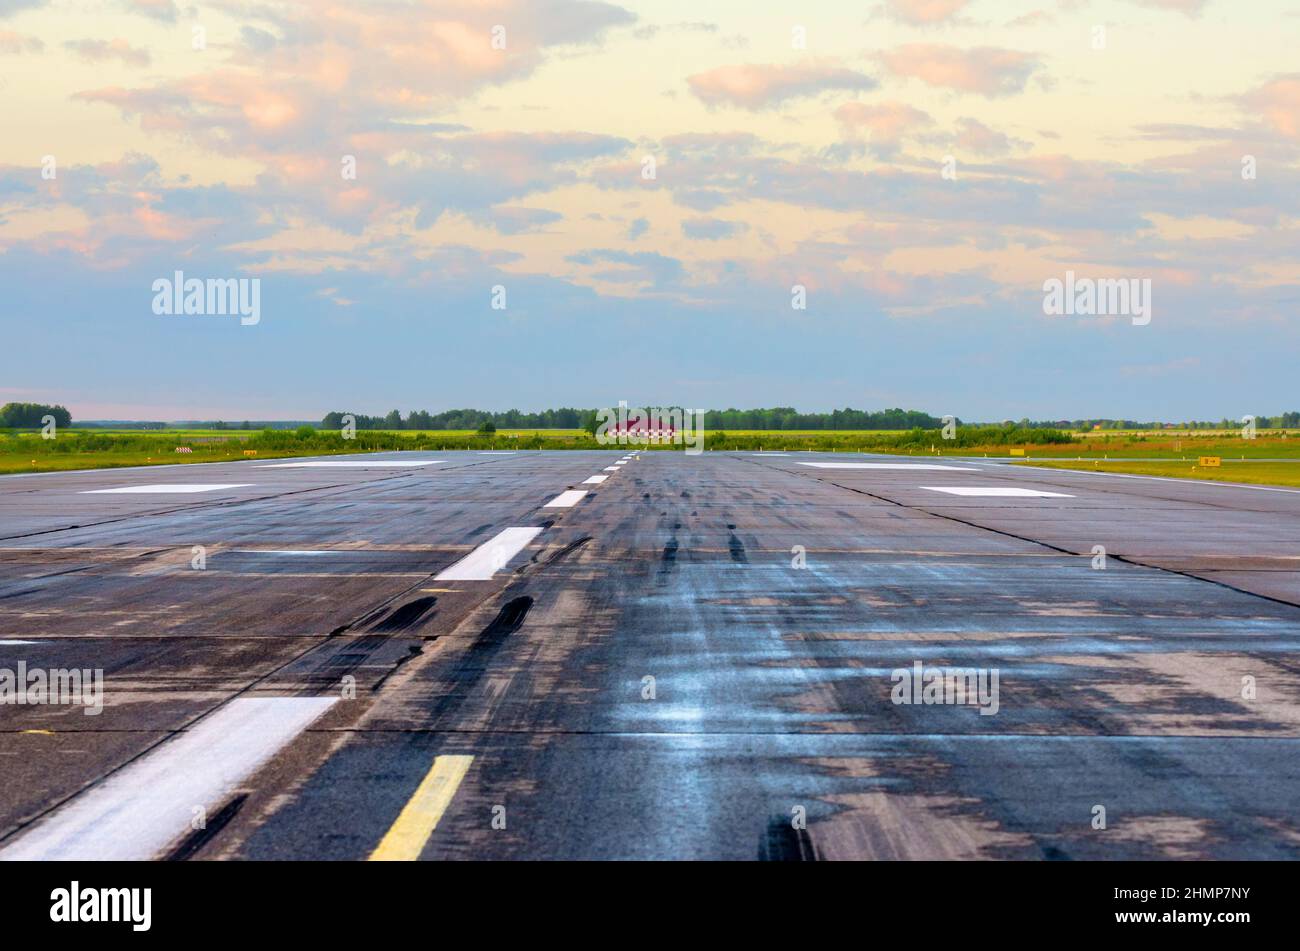 Alba con paesaggio aeroporto di pista bagnata con tracce di gomme su asfalto Foto Stock